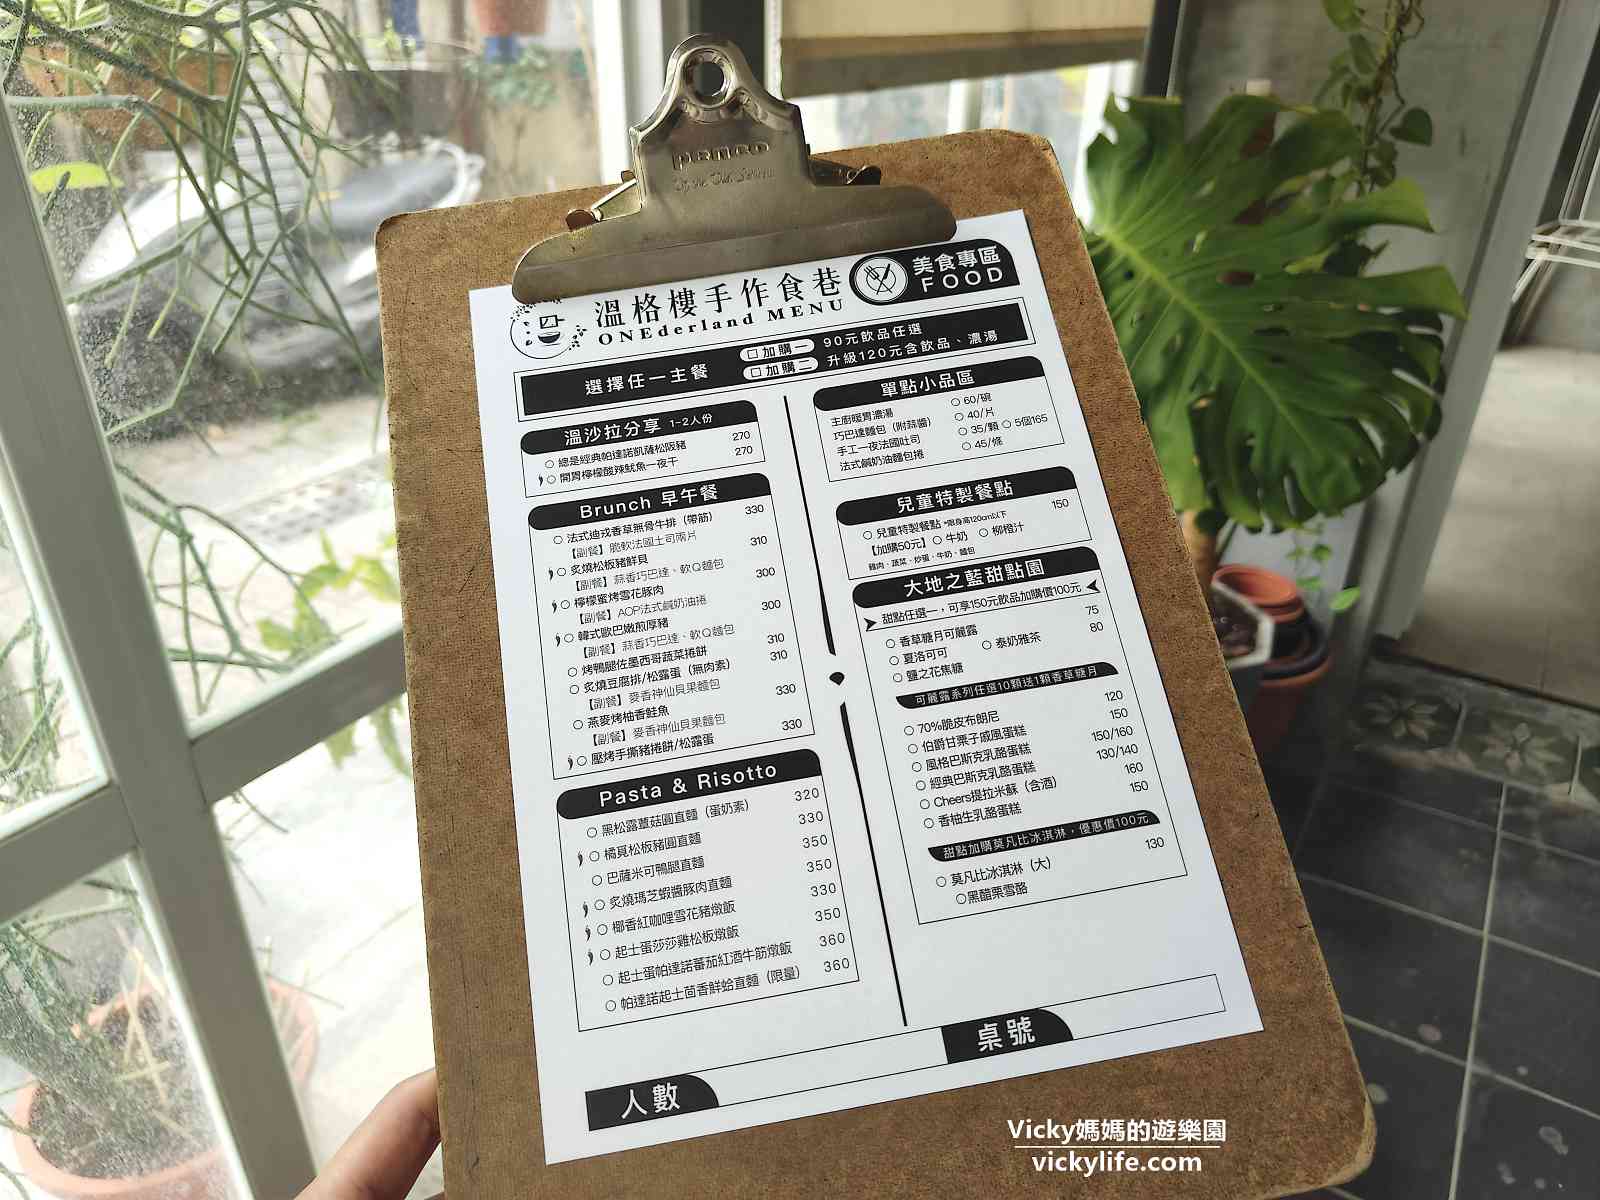 台南早午餐︱北區小巷弄內的純白早午餐店溫格樓(菜單)，療癒花草、美味食物，好幸福啊